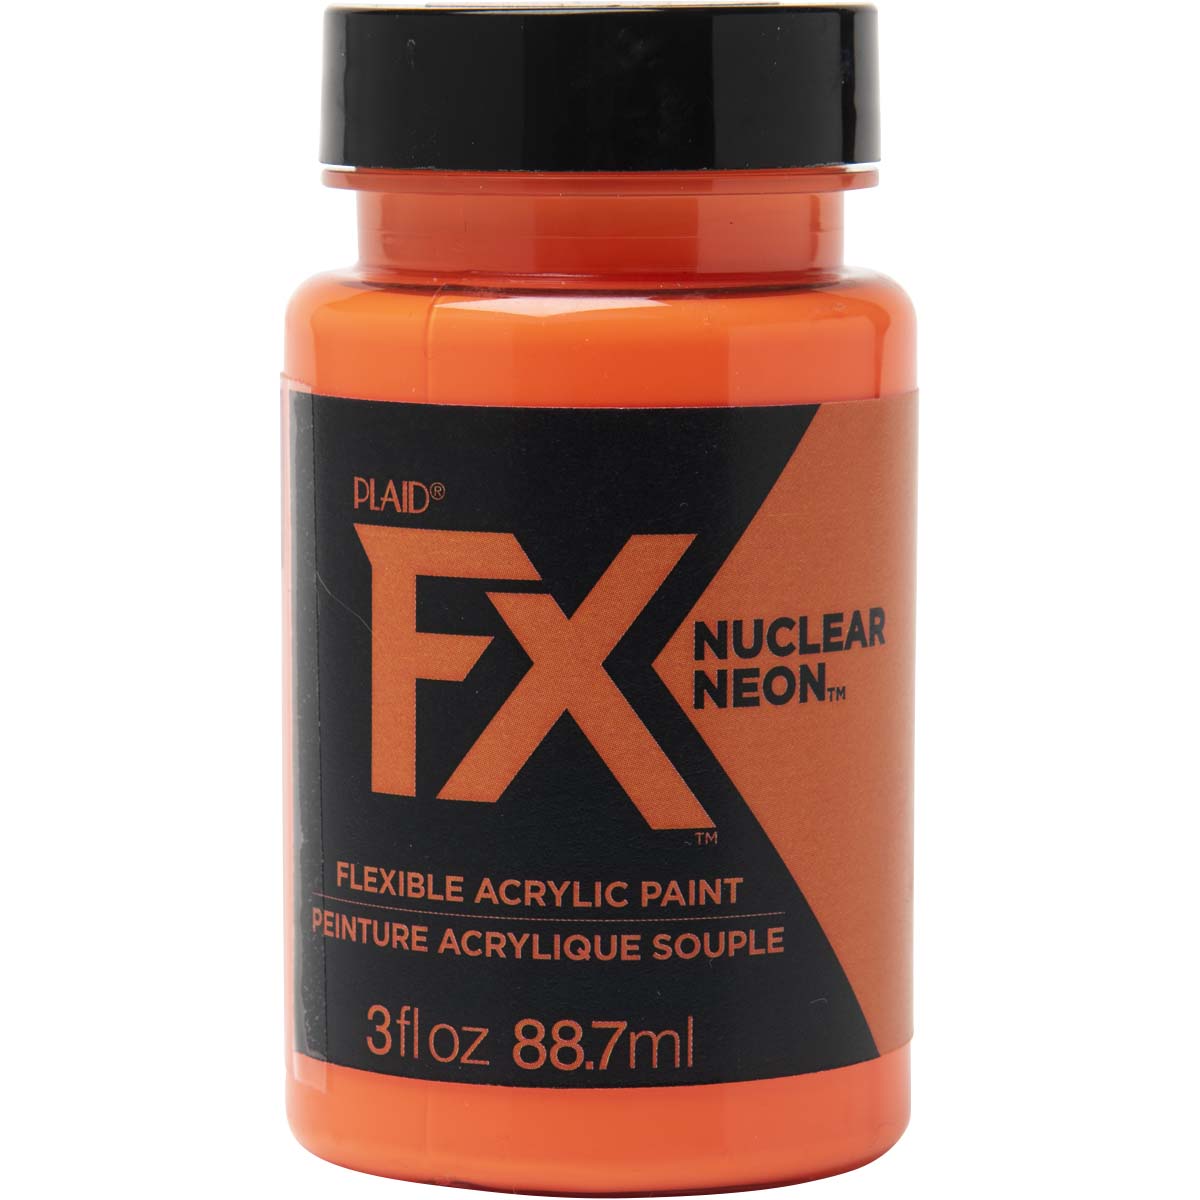 PlaidFX Nuclear Neon Flexible Acrylic Paint - Laser Beam, 3 oz. - 36878